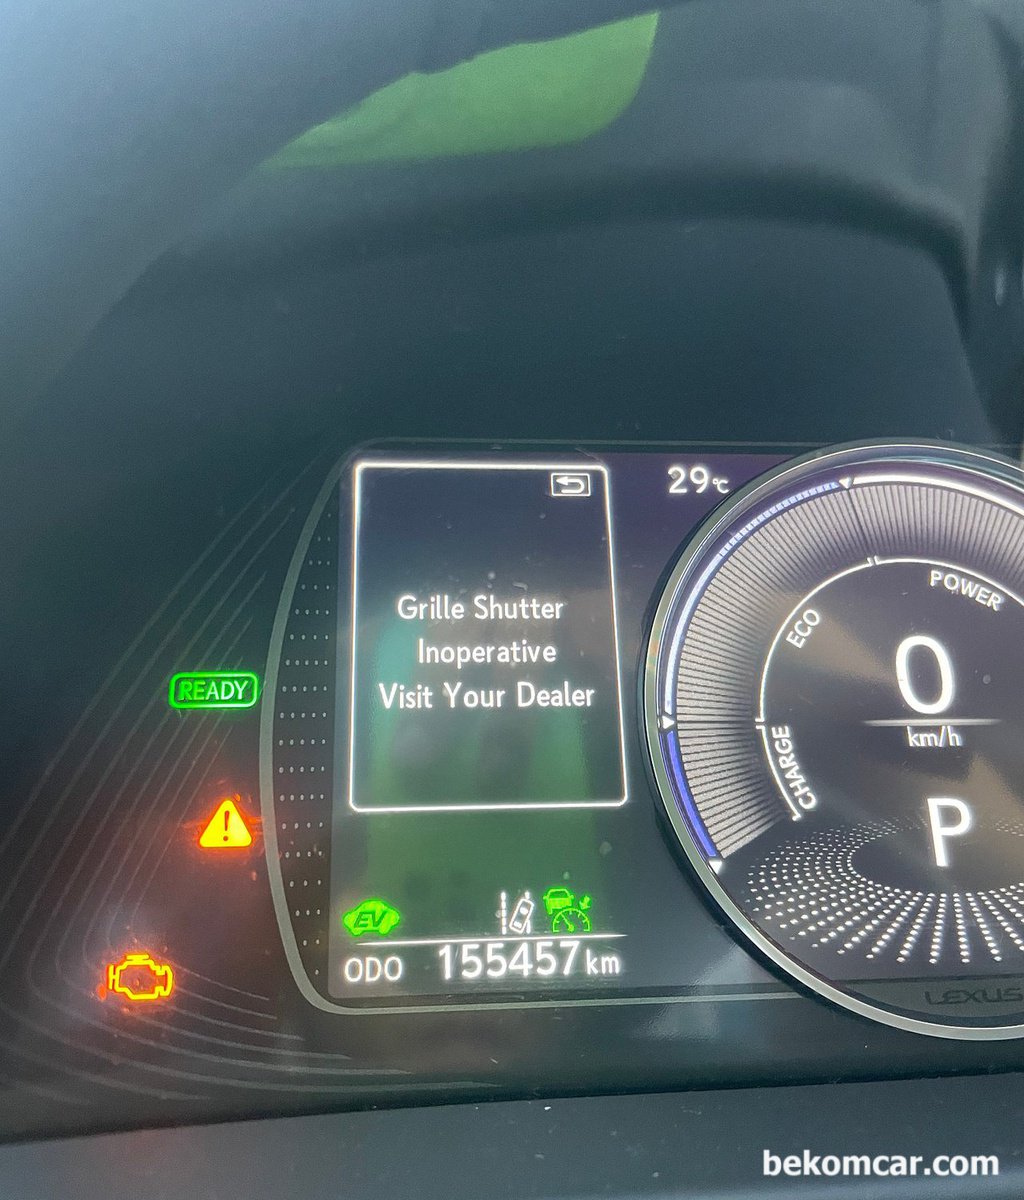 렉서스 2018년 ES300H 엔진경고등과 함께 Grille Shutter Inoperative 떠요. 갑자기 경고등이 있어 걱정입니다. 렉서스 센터 가봐야 할까요?|베콤카 (bekomcar.com)